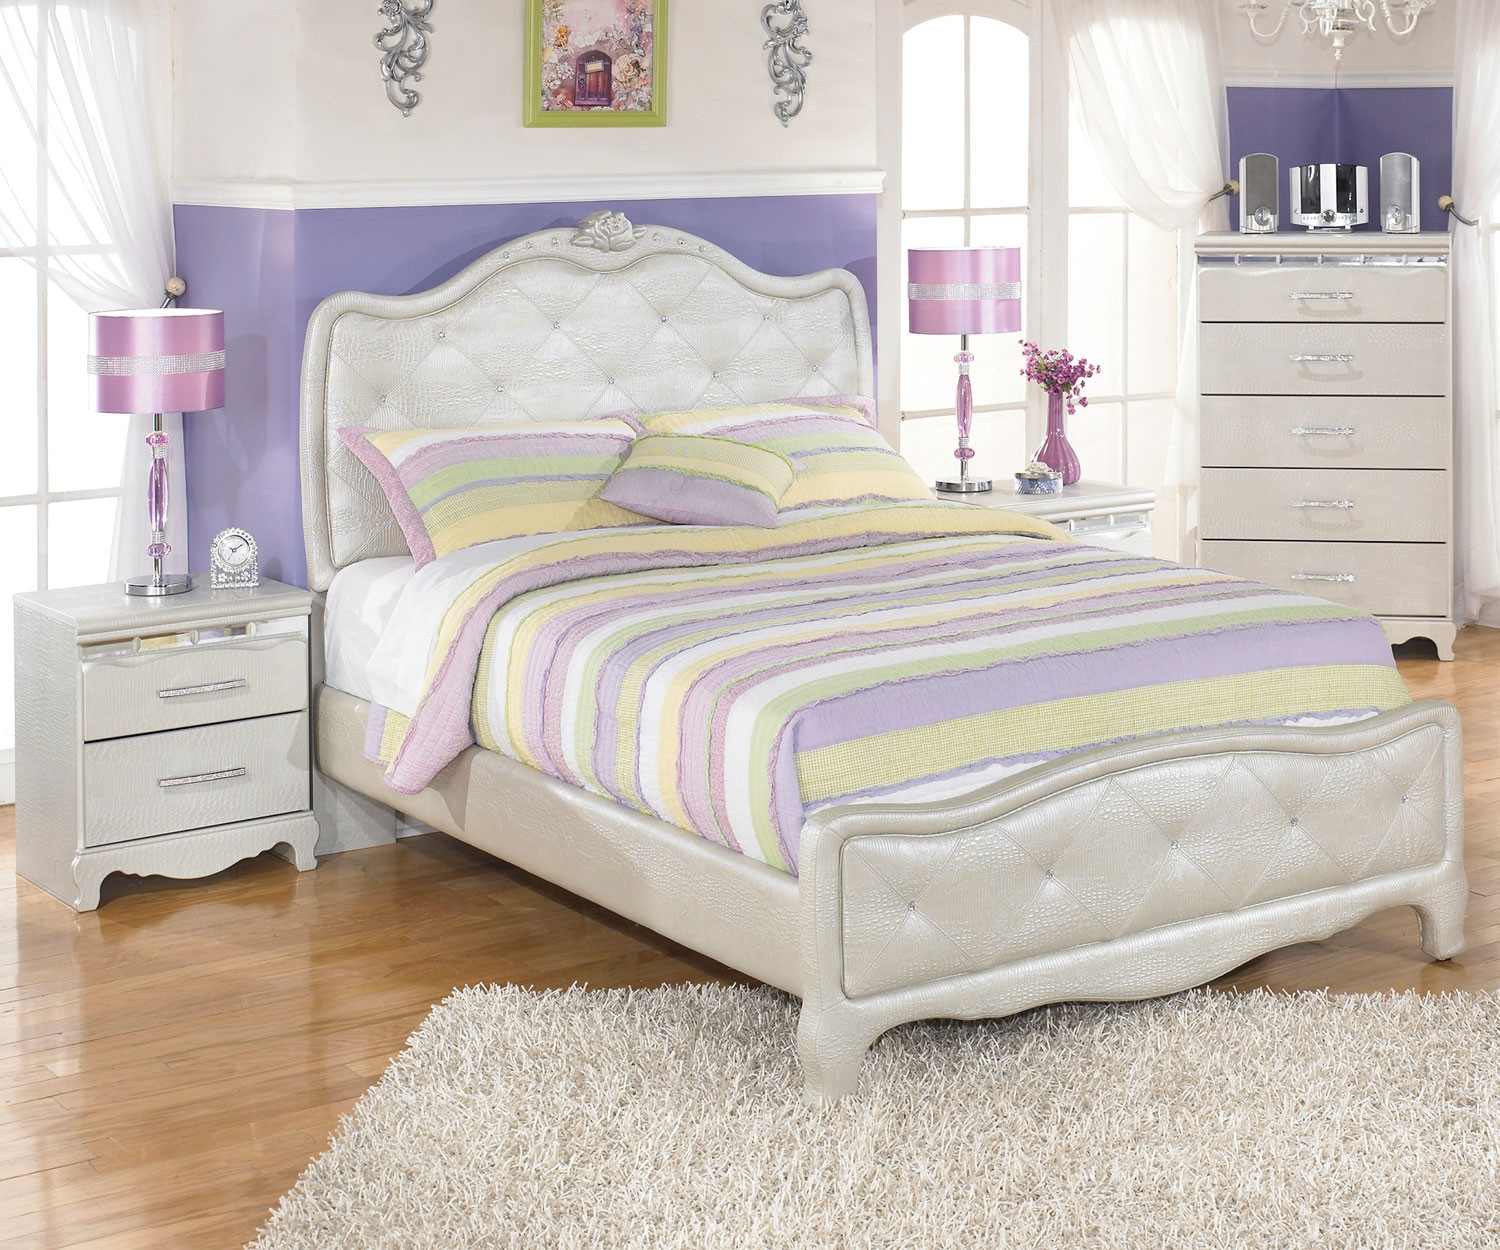 Girls Full Bedroom Sets
 Zarollina B182 Full Size Upholstered Bed